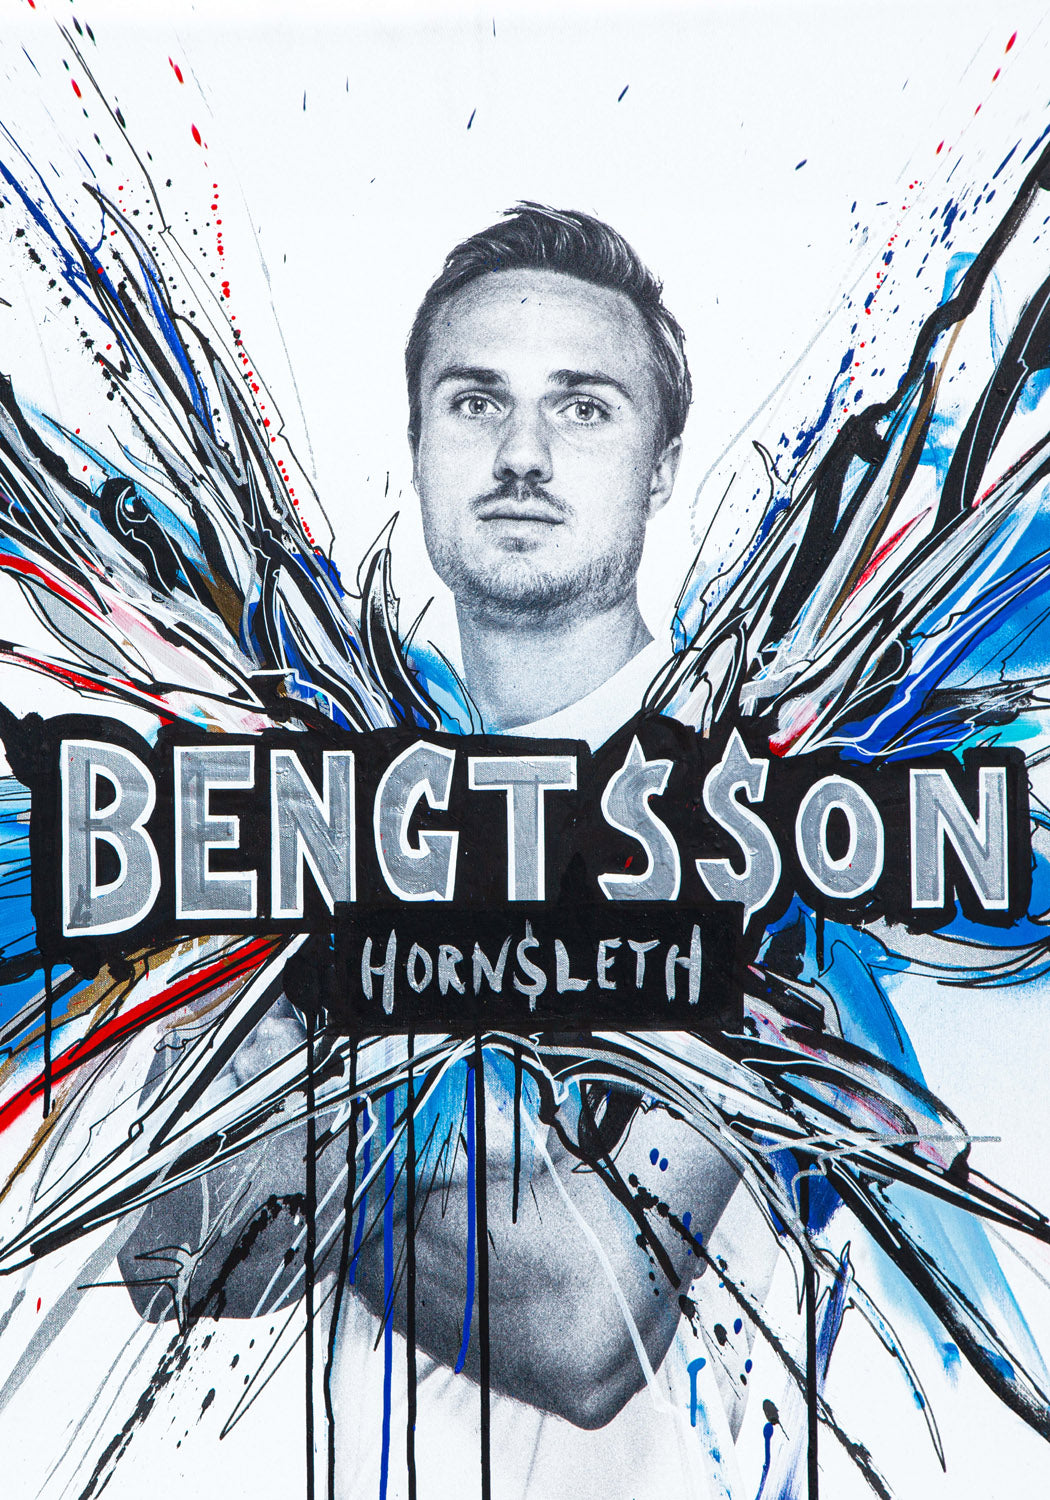 FCK - Bengtsson - Plakat af Hornsleth